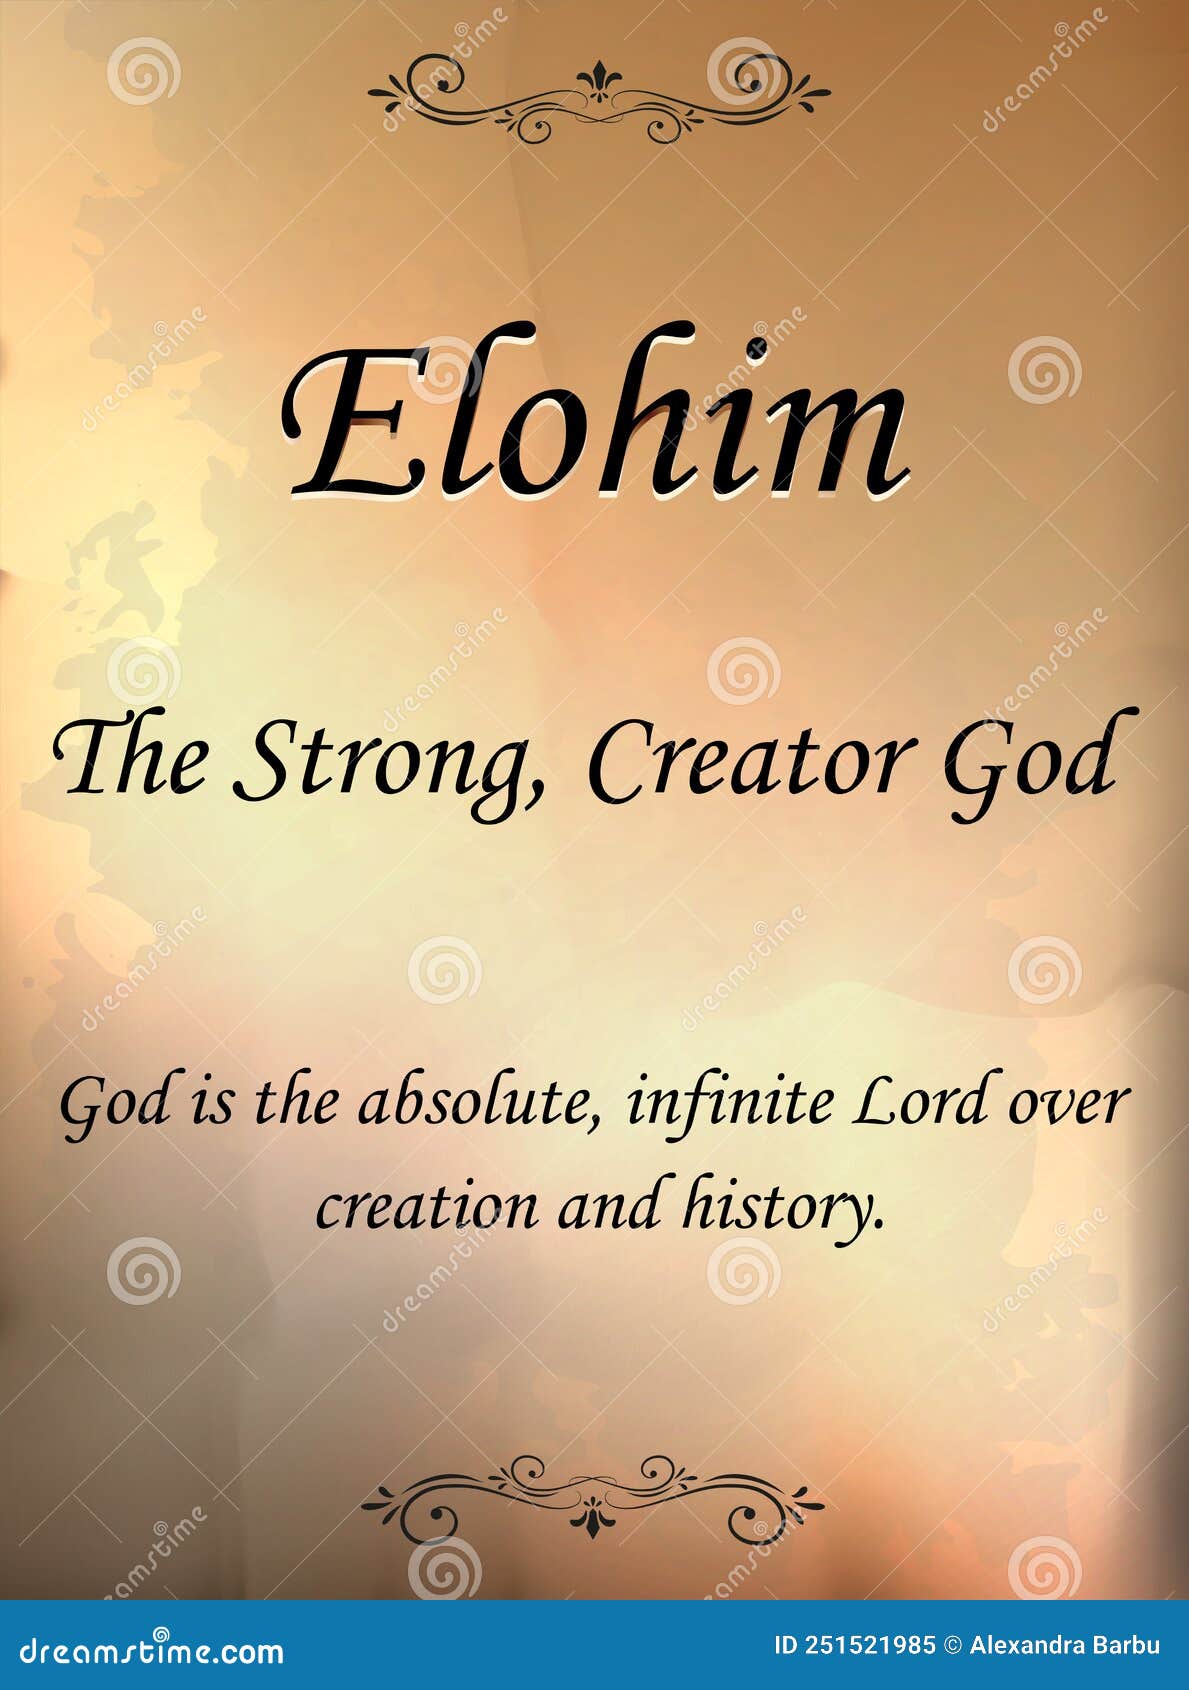 Quem são os Elohim?